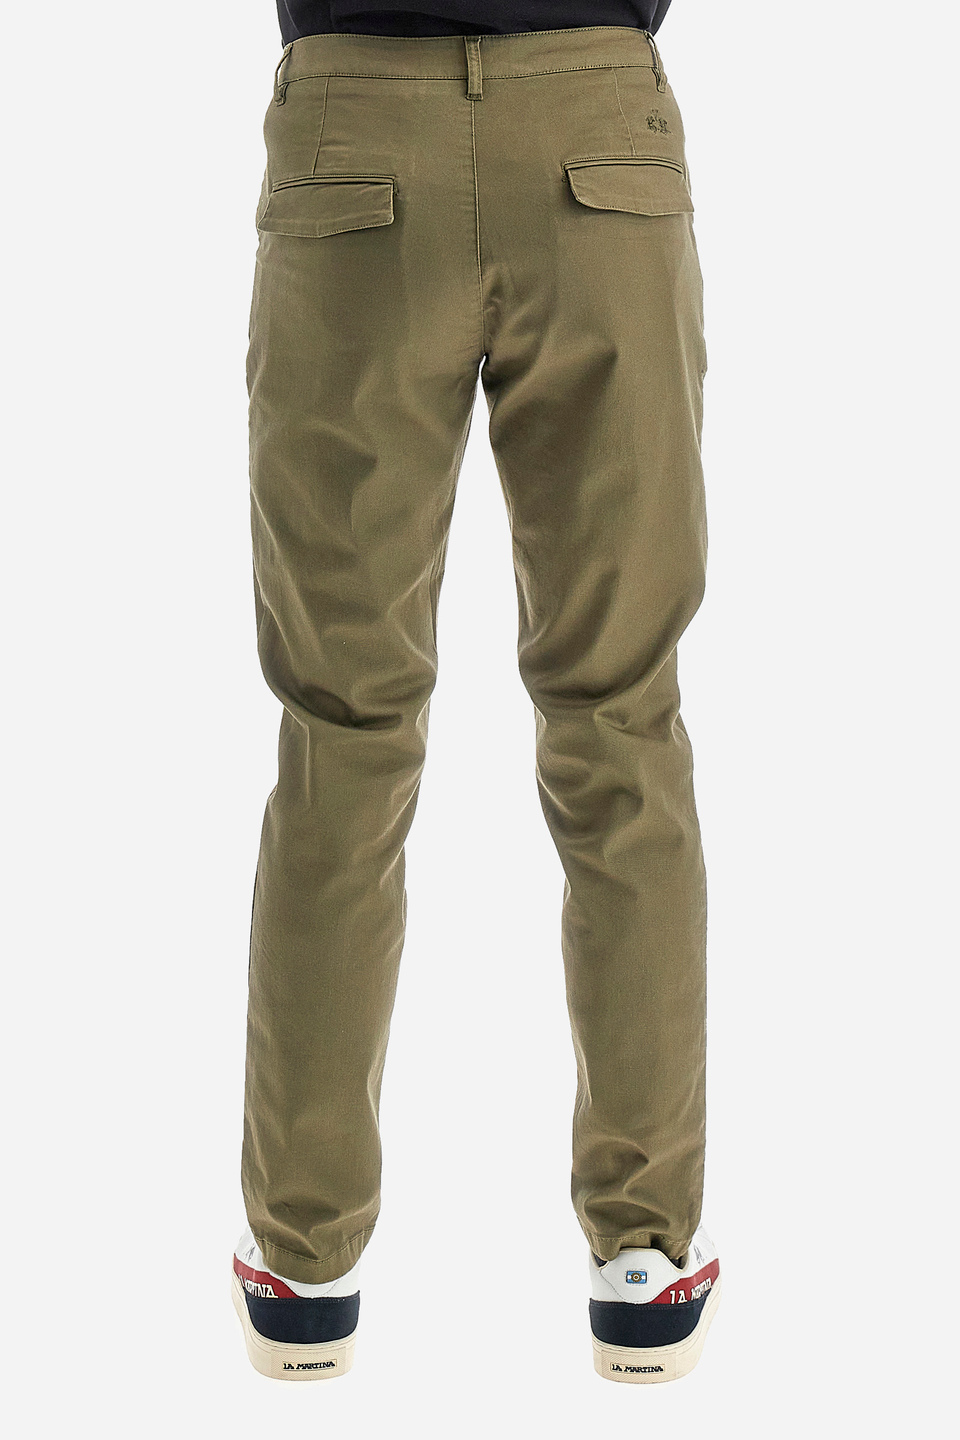 Pantalone da uomo in cotone chino elasticizzato slim fit  -  Siard | La Martina - Official Online Shop